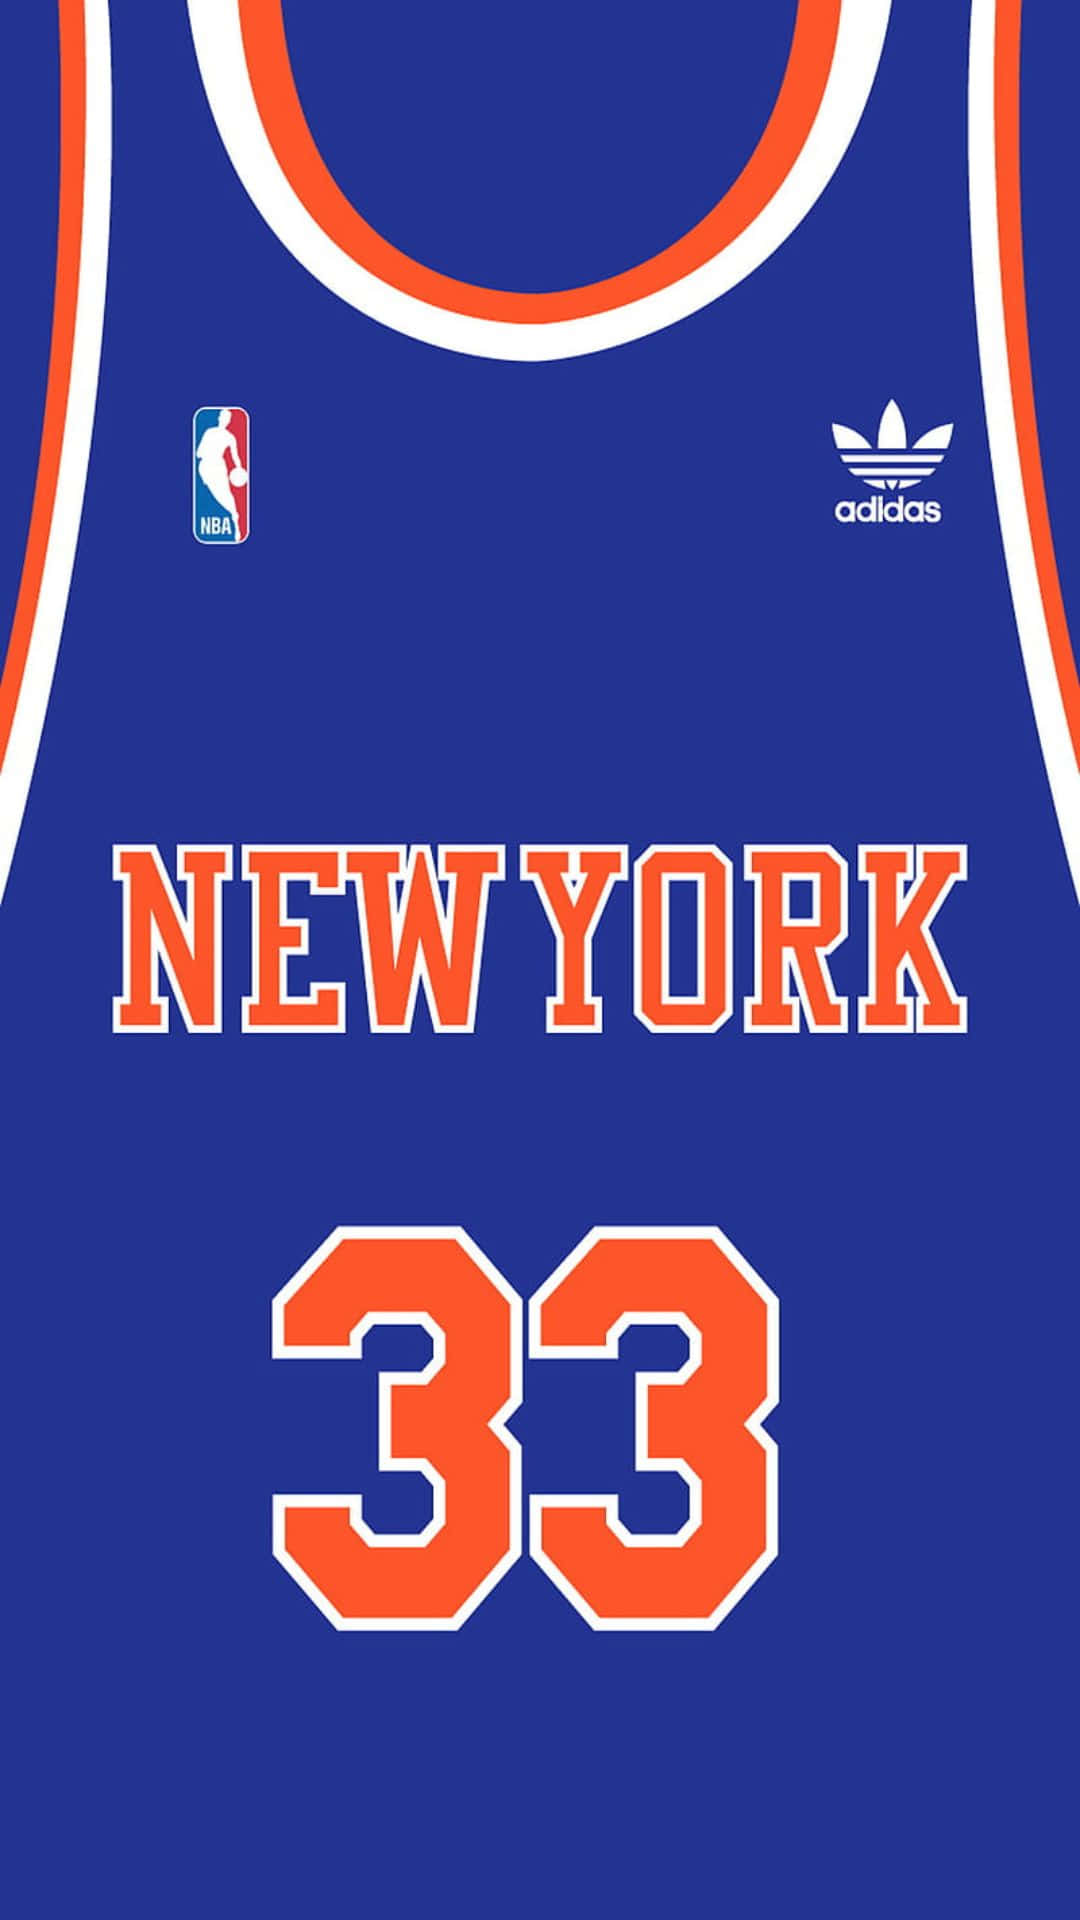 New York33 Adidas N B A Jersey Wallpaper